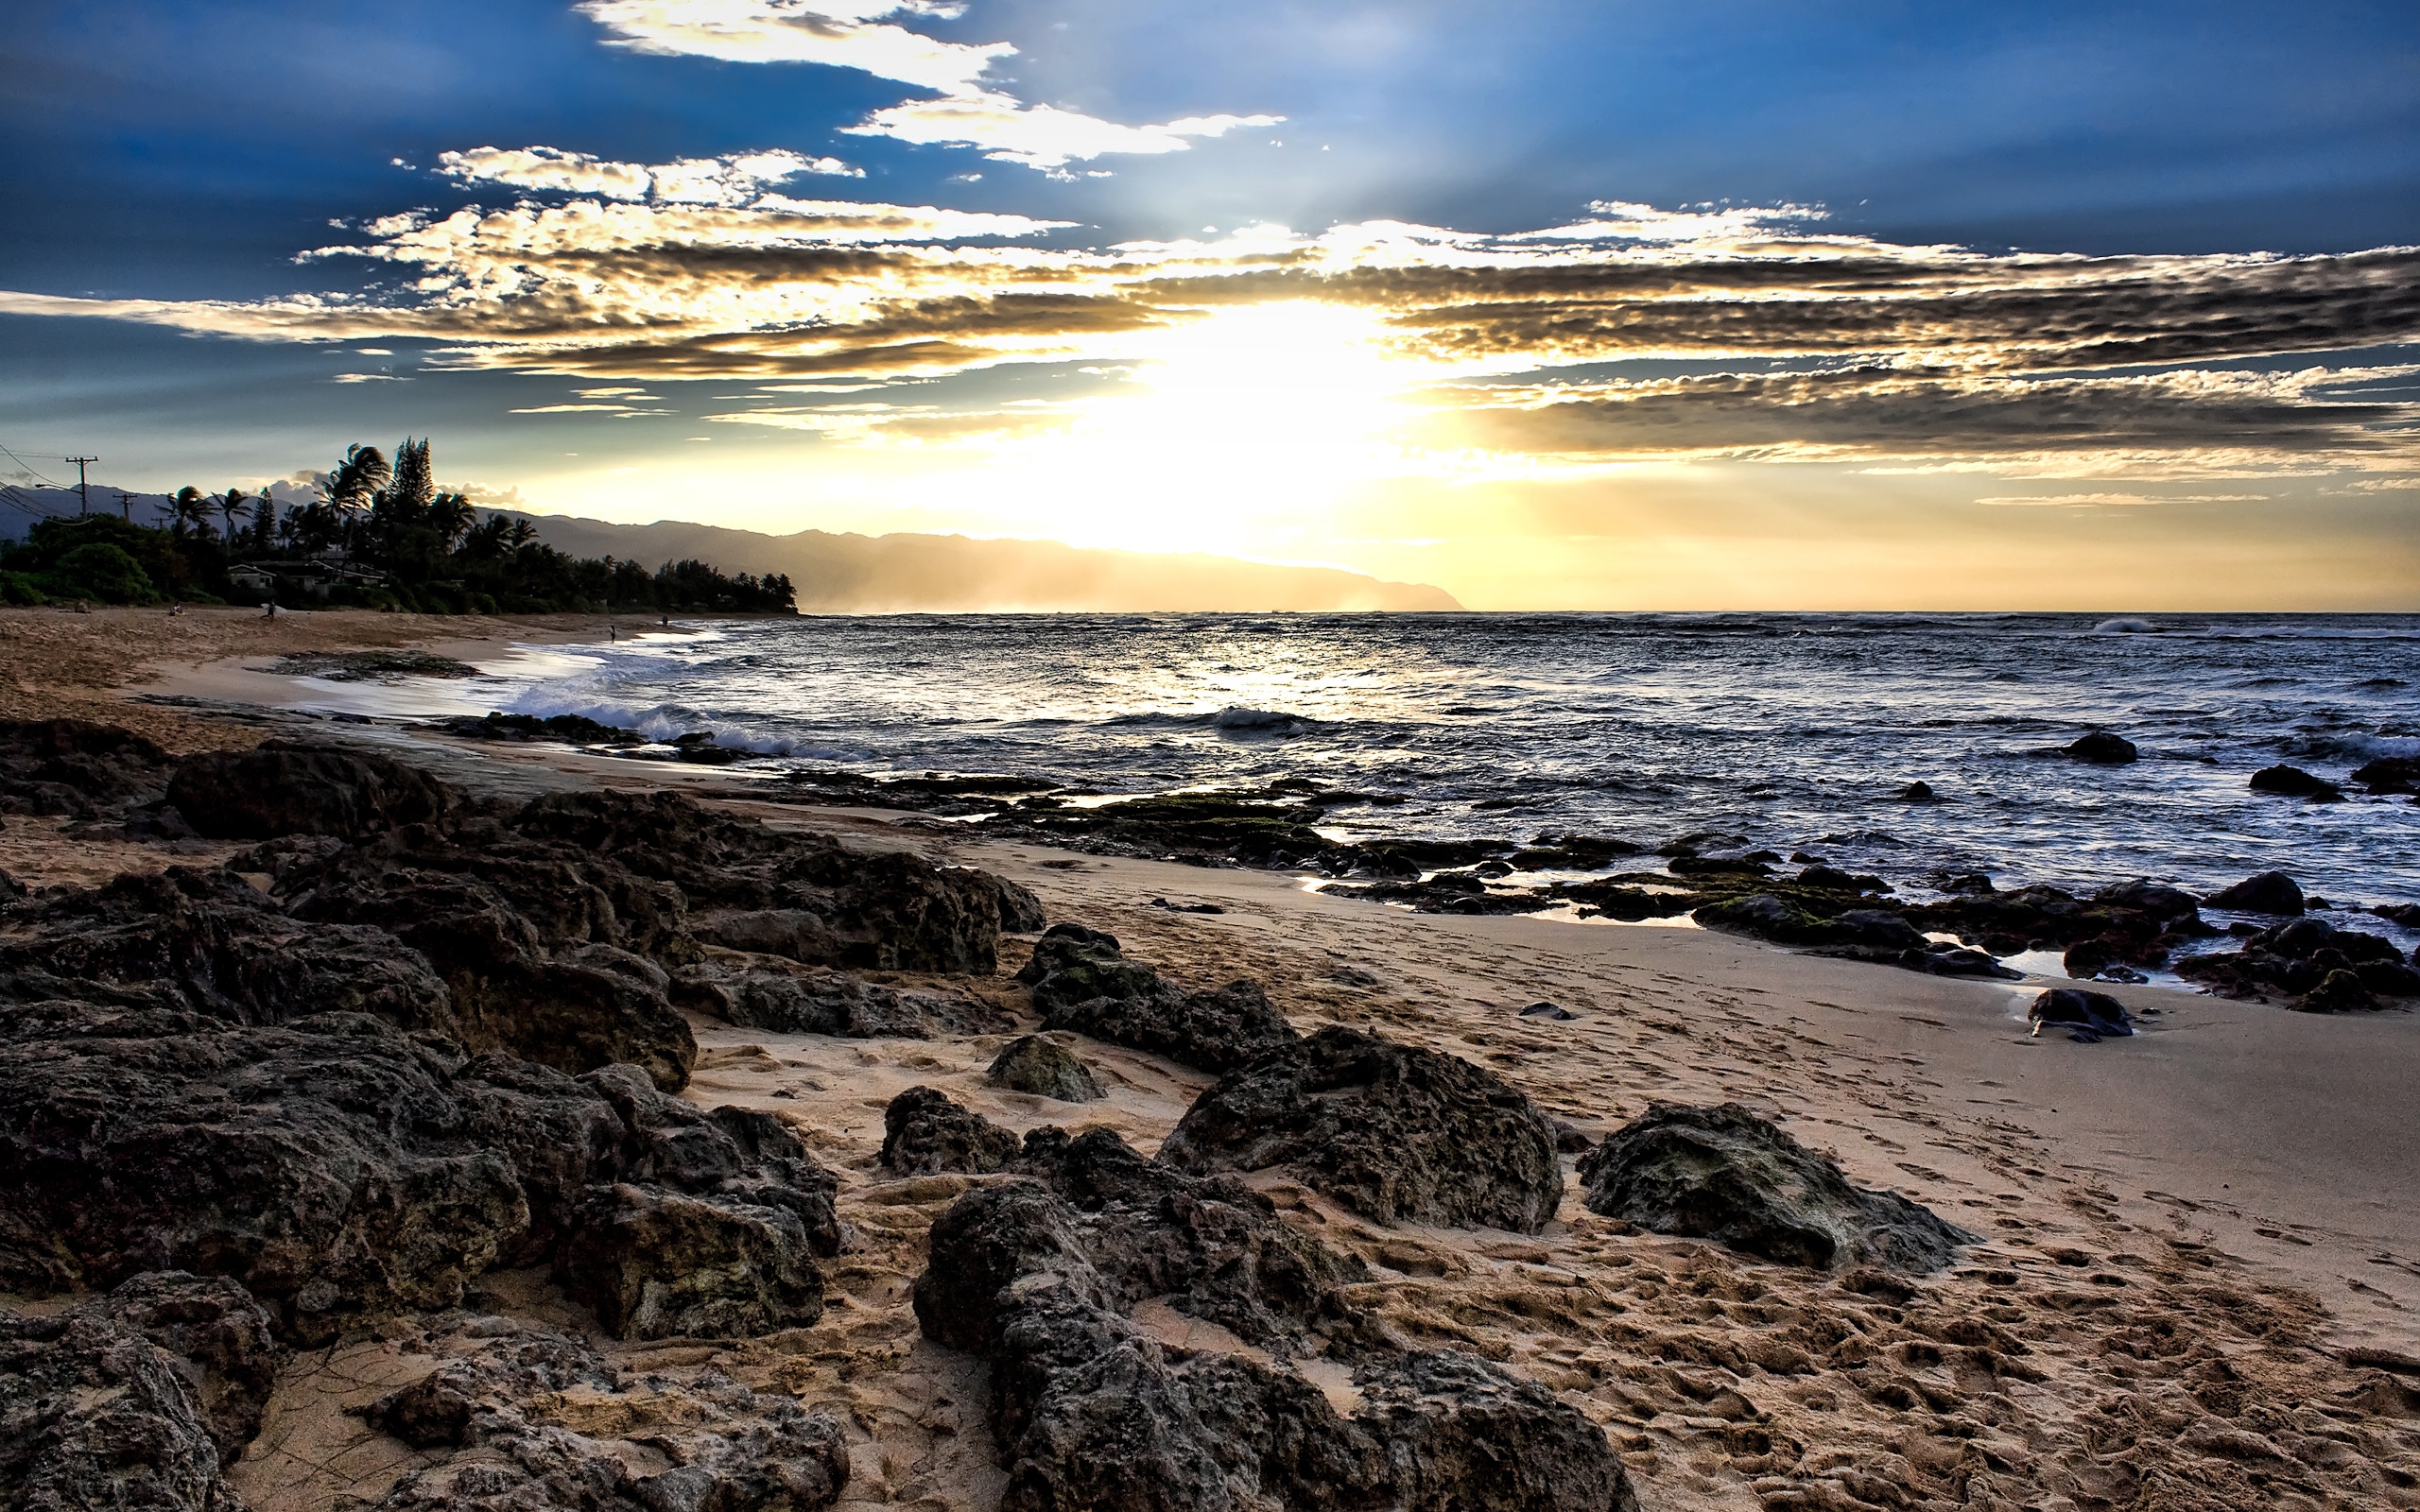 Laniakea Sunset for 2560 x 1600 widescreen resolution